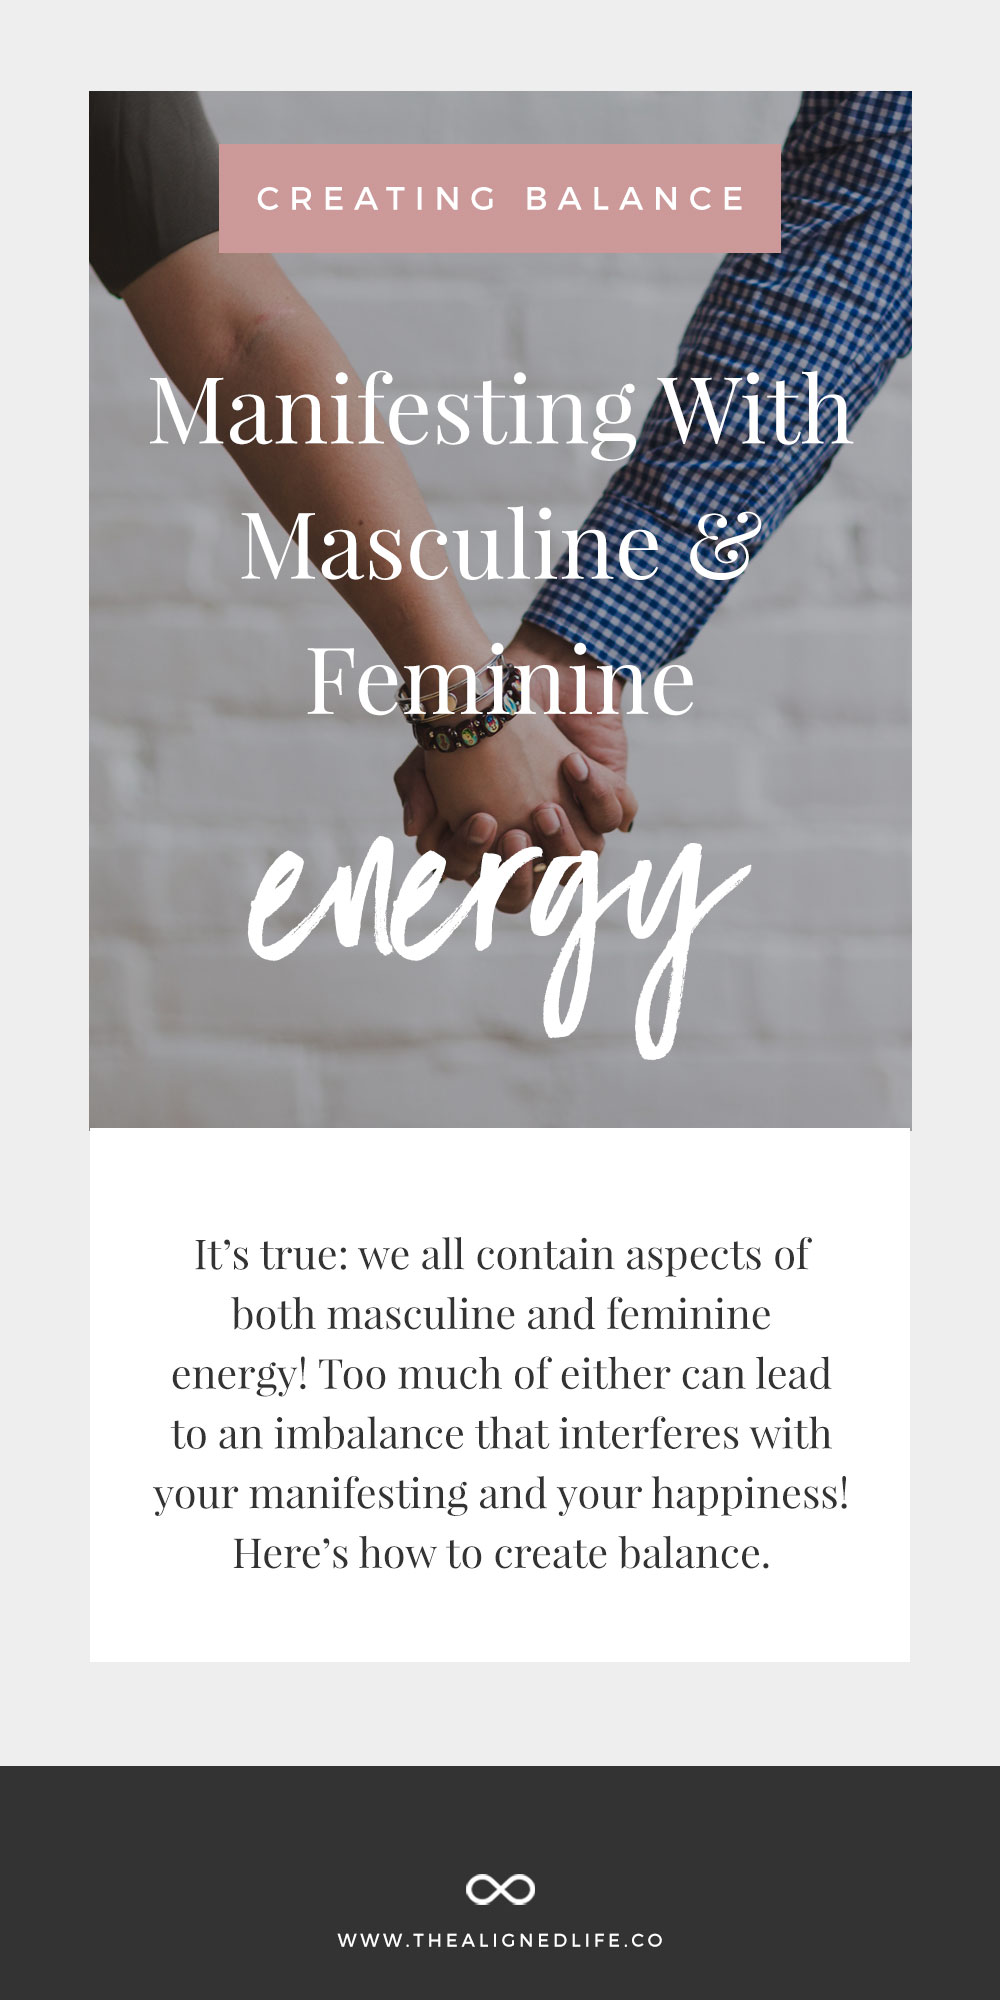 Creating Balance: Manifesting With Masculine And Feminine Energy